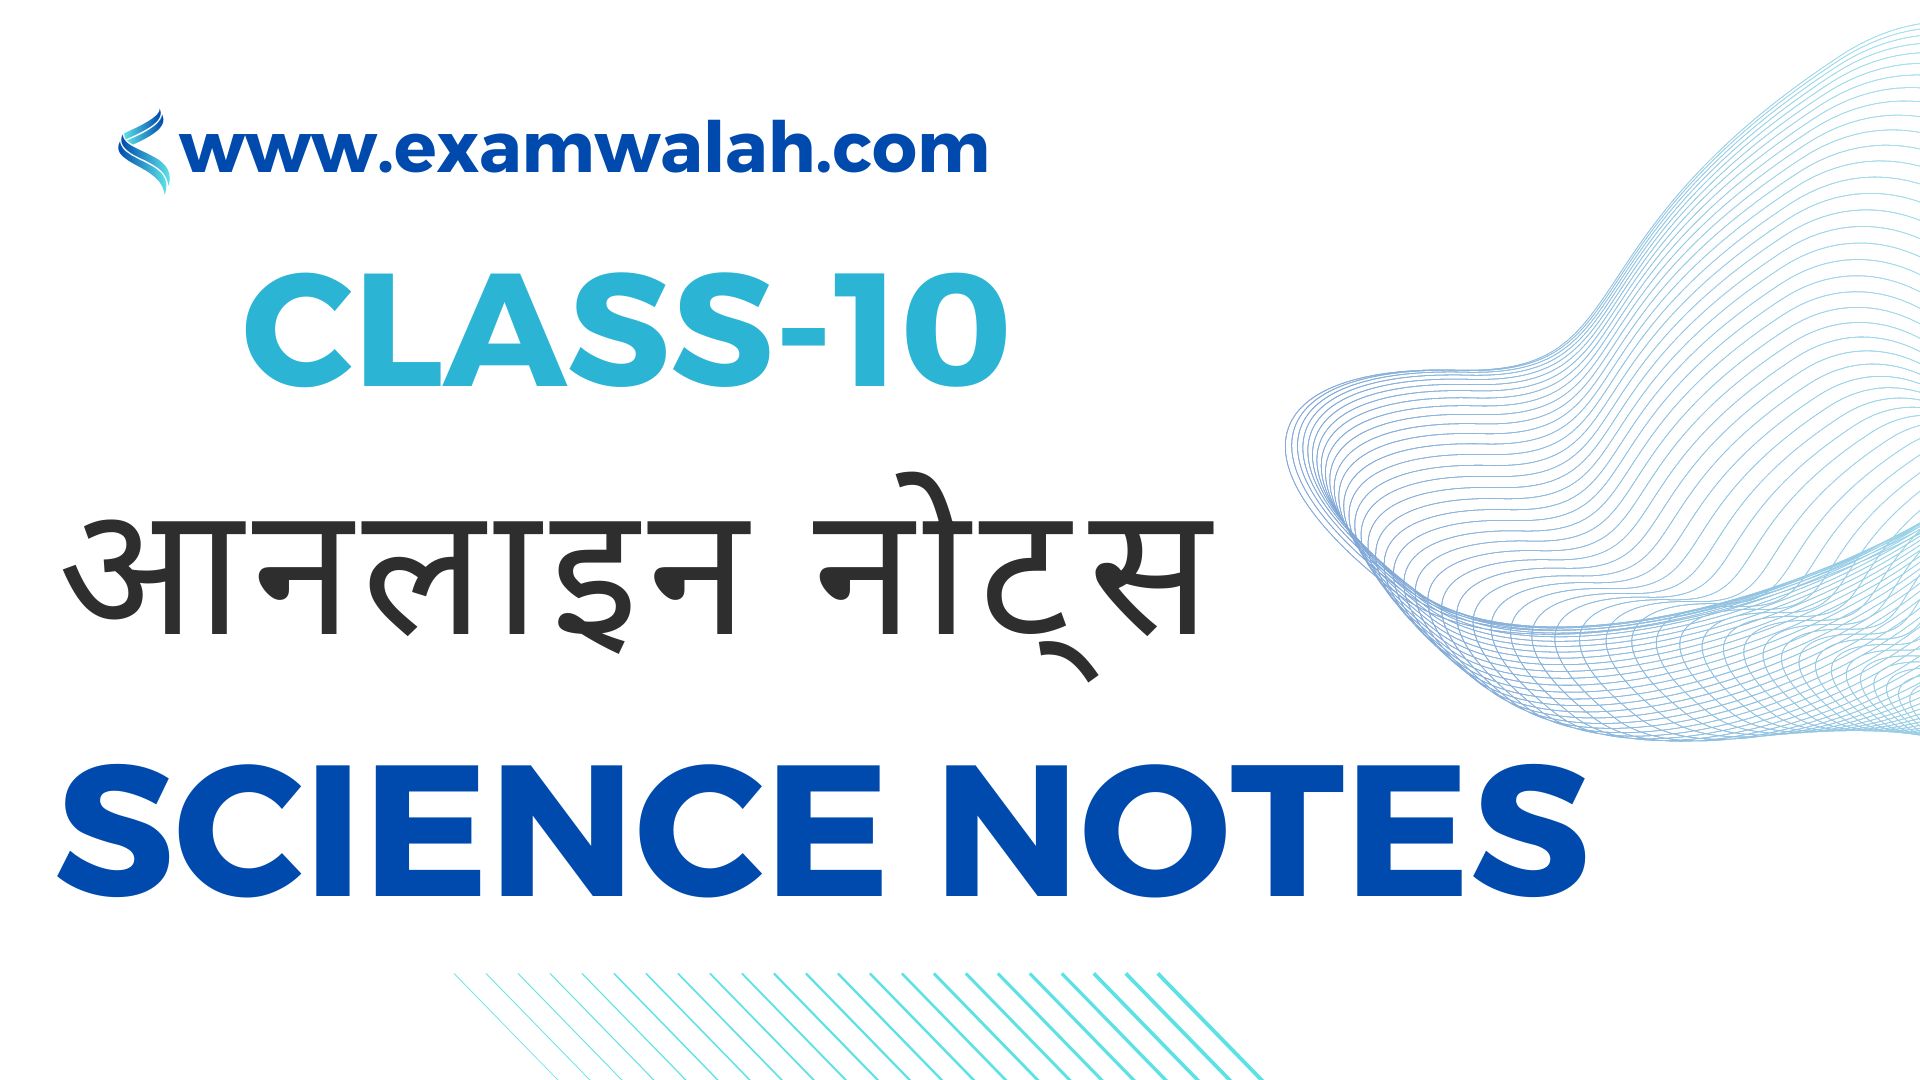 Class-10th Science Notes PDF in Hindi - कक्षा-10 विज्ञान हस्तलिखित नोट्स